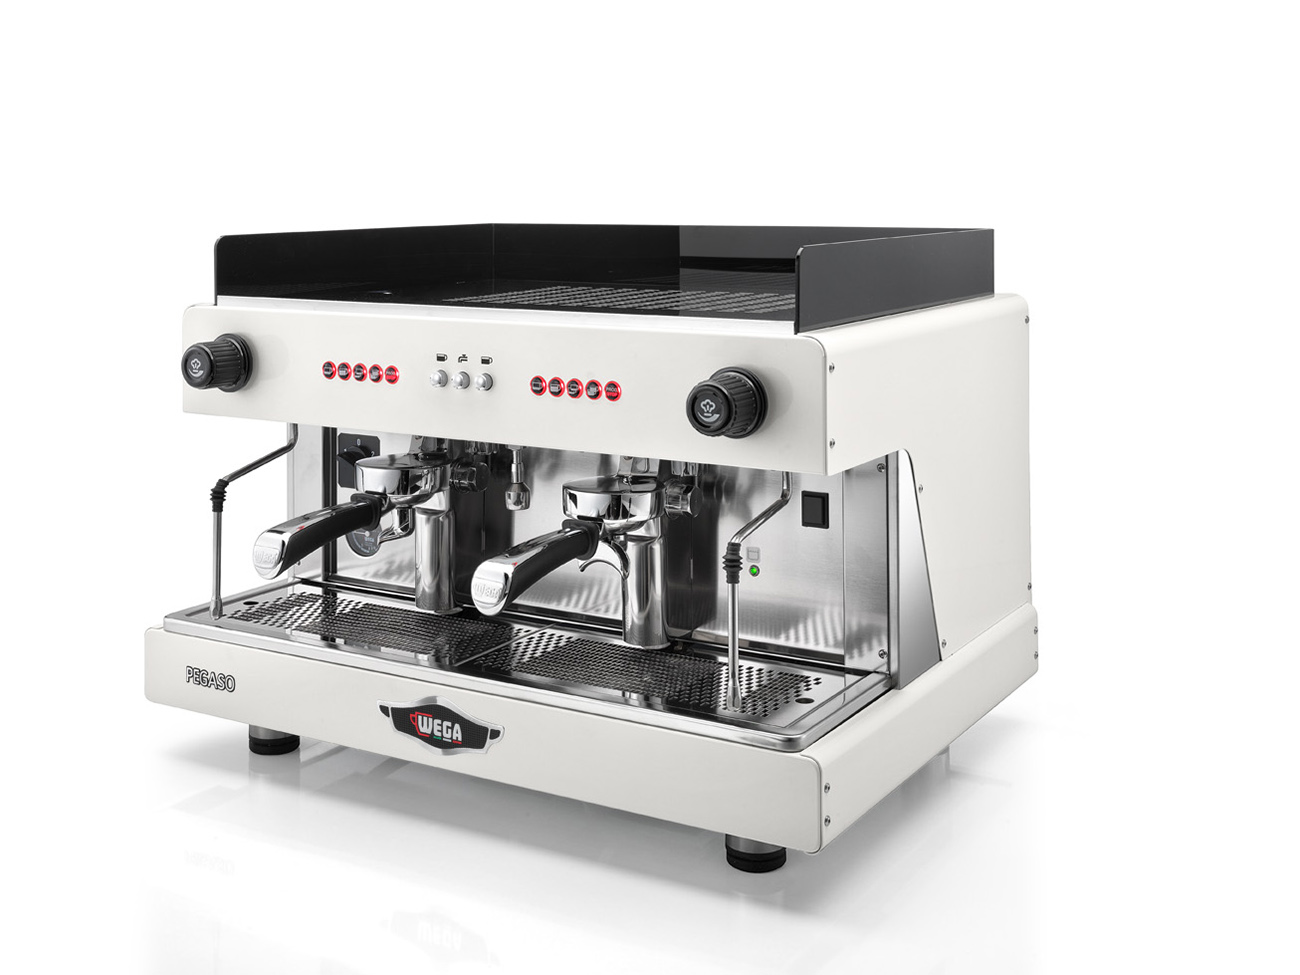 ماكينة قهوه ويجا بيجاسو ايطالي ابيض ٢ جروب مرتفع